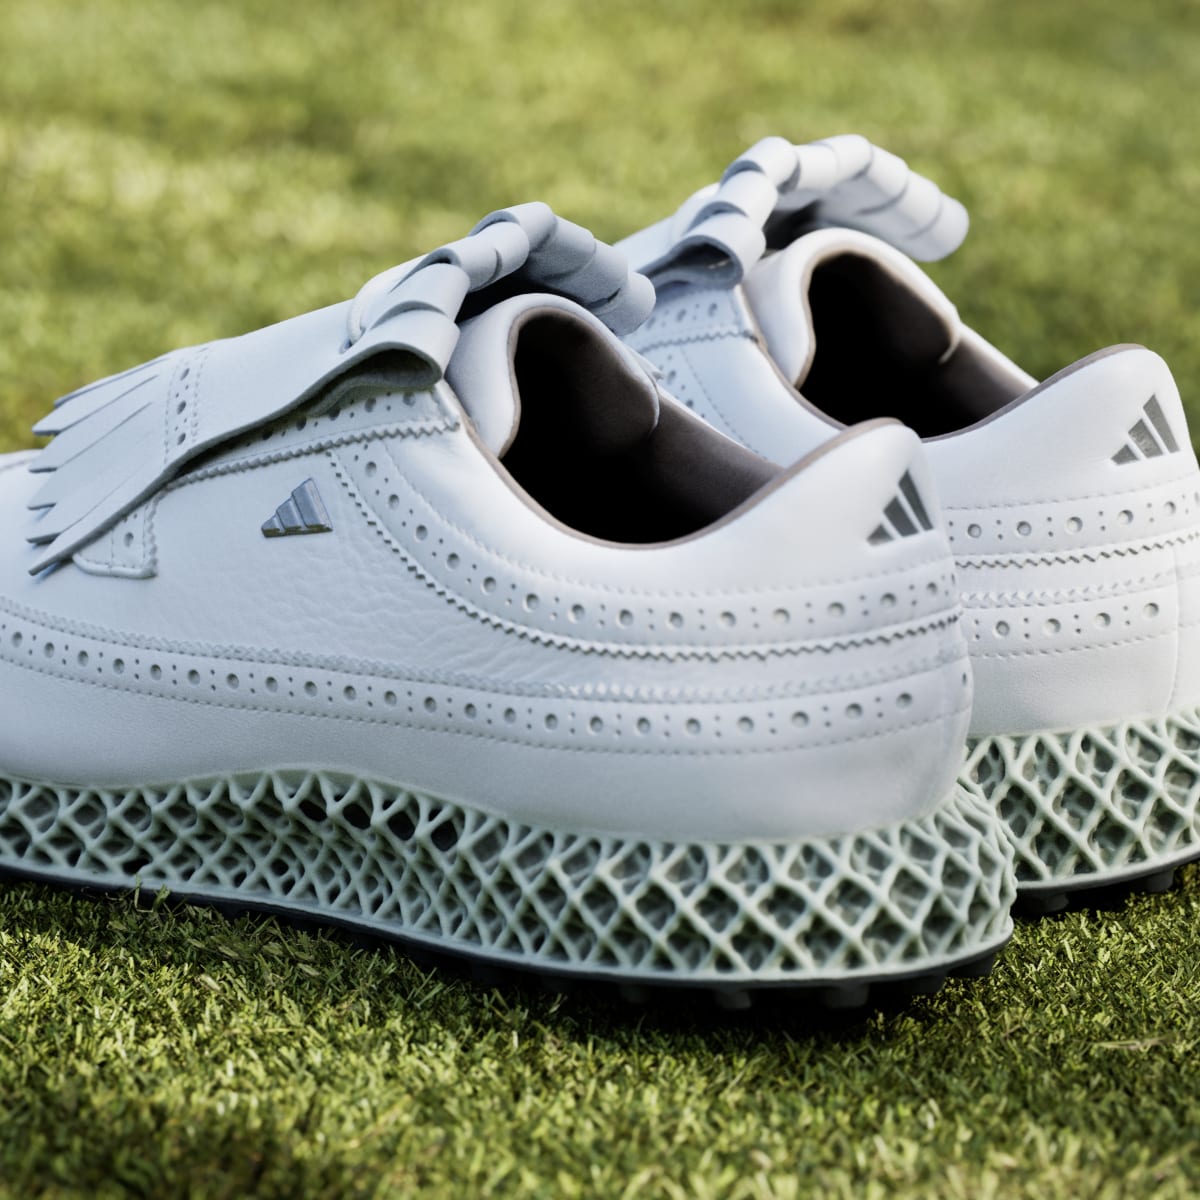 Adidas MC87 Adicross 4D Spikeless Golf Shoes. 9